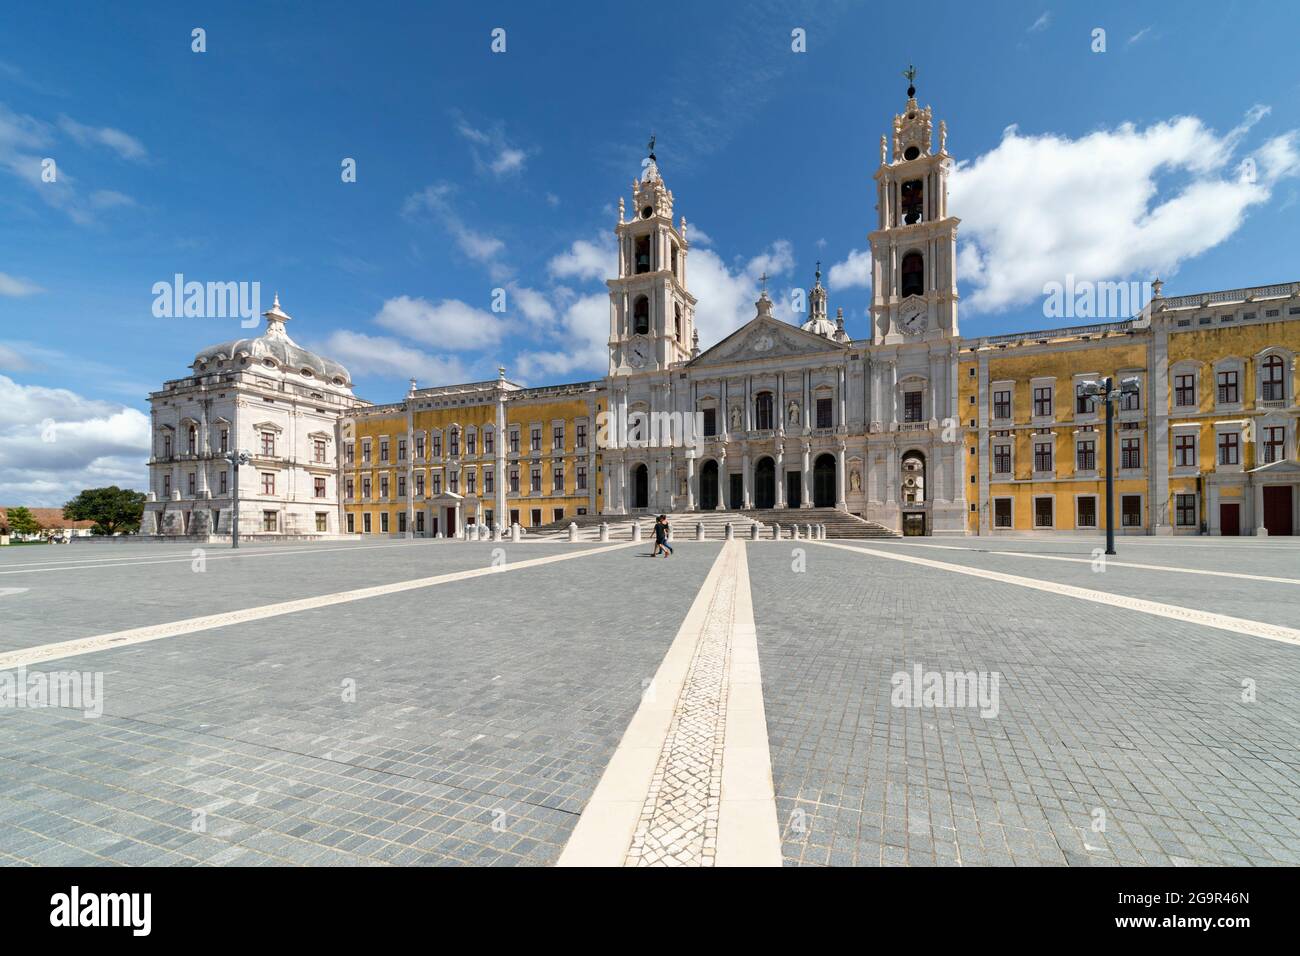 La façade principale du Palais de Mafra, quartier de Lisbonne, Portugal. Il est également connu sous le nom de Palais-couvent de Mafra et le bâtiment royal de Mafra. Banque D'Images